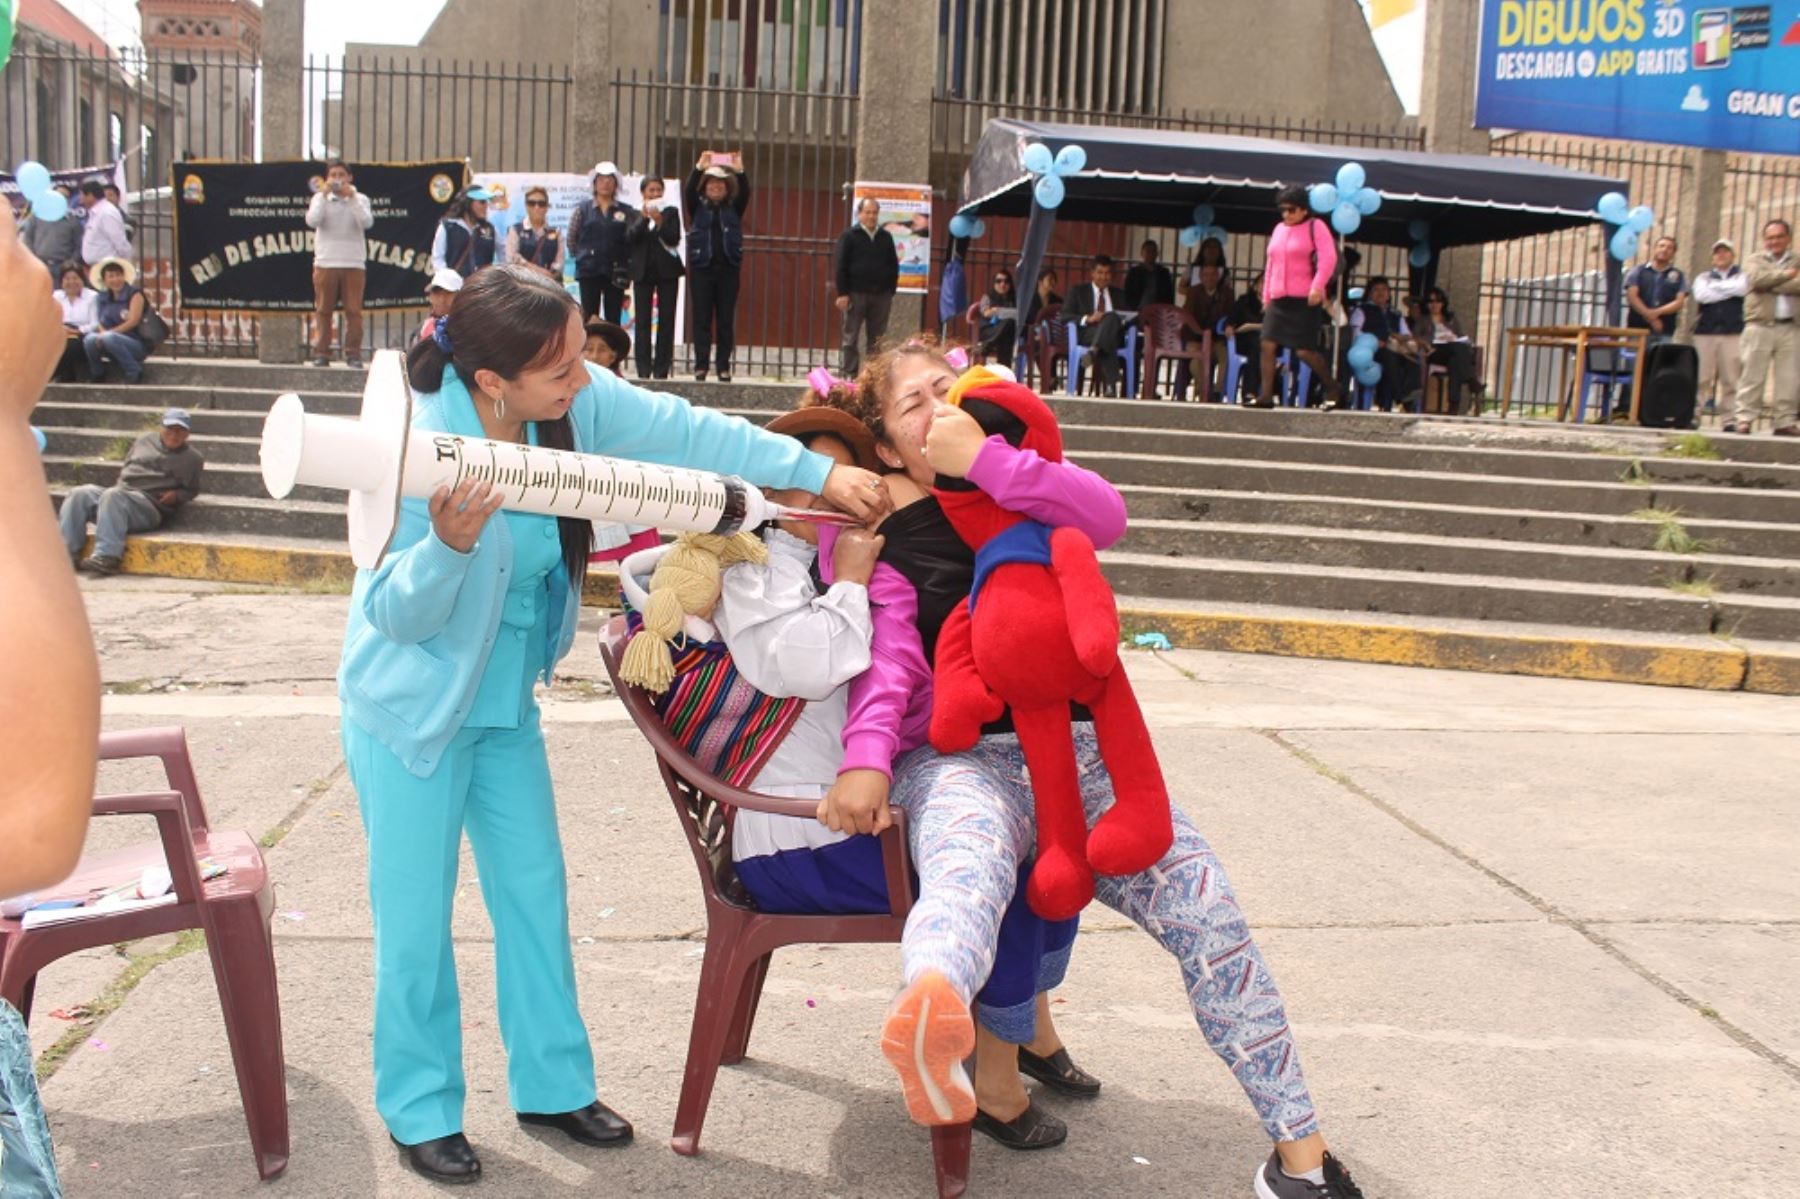 Con pasacalle lanzan Semana de la Vacunación en las Américas en Huaraz. ANDINA